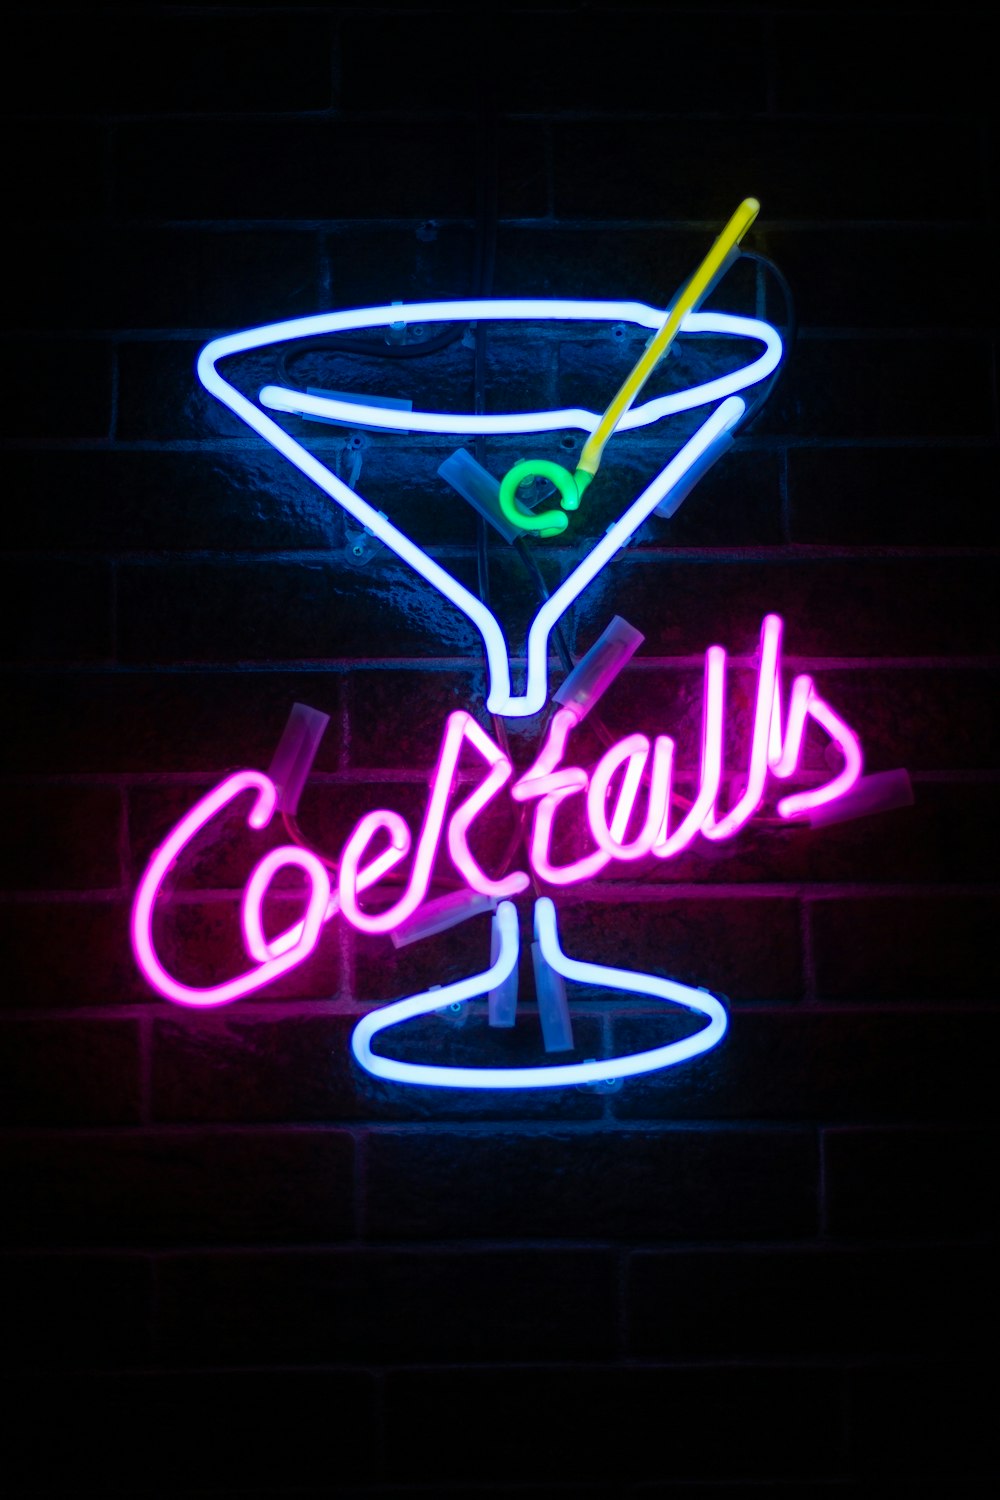 Cocktails LED signage